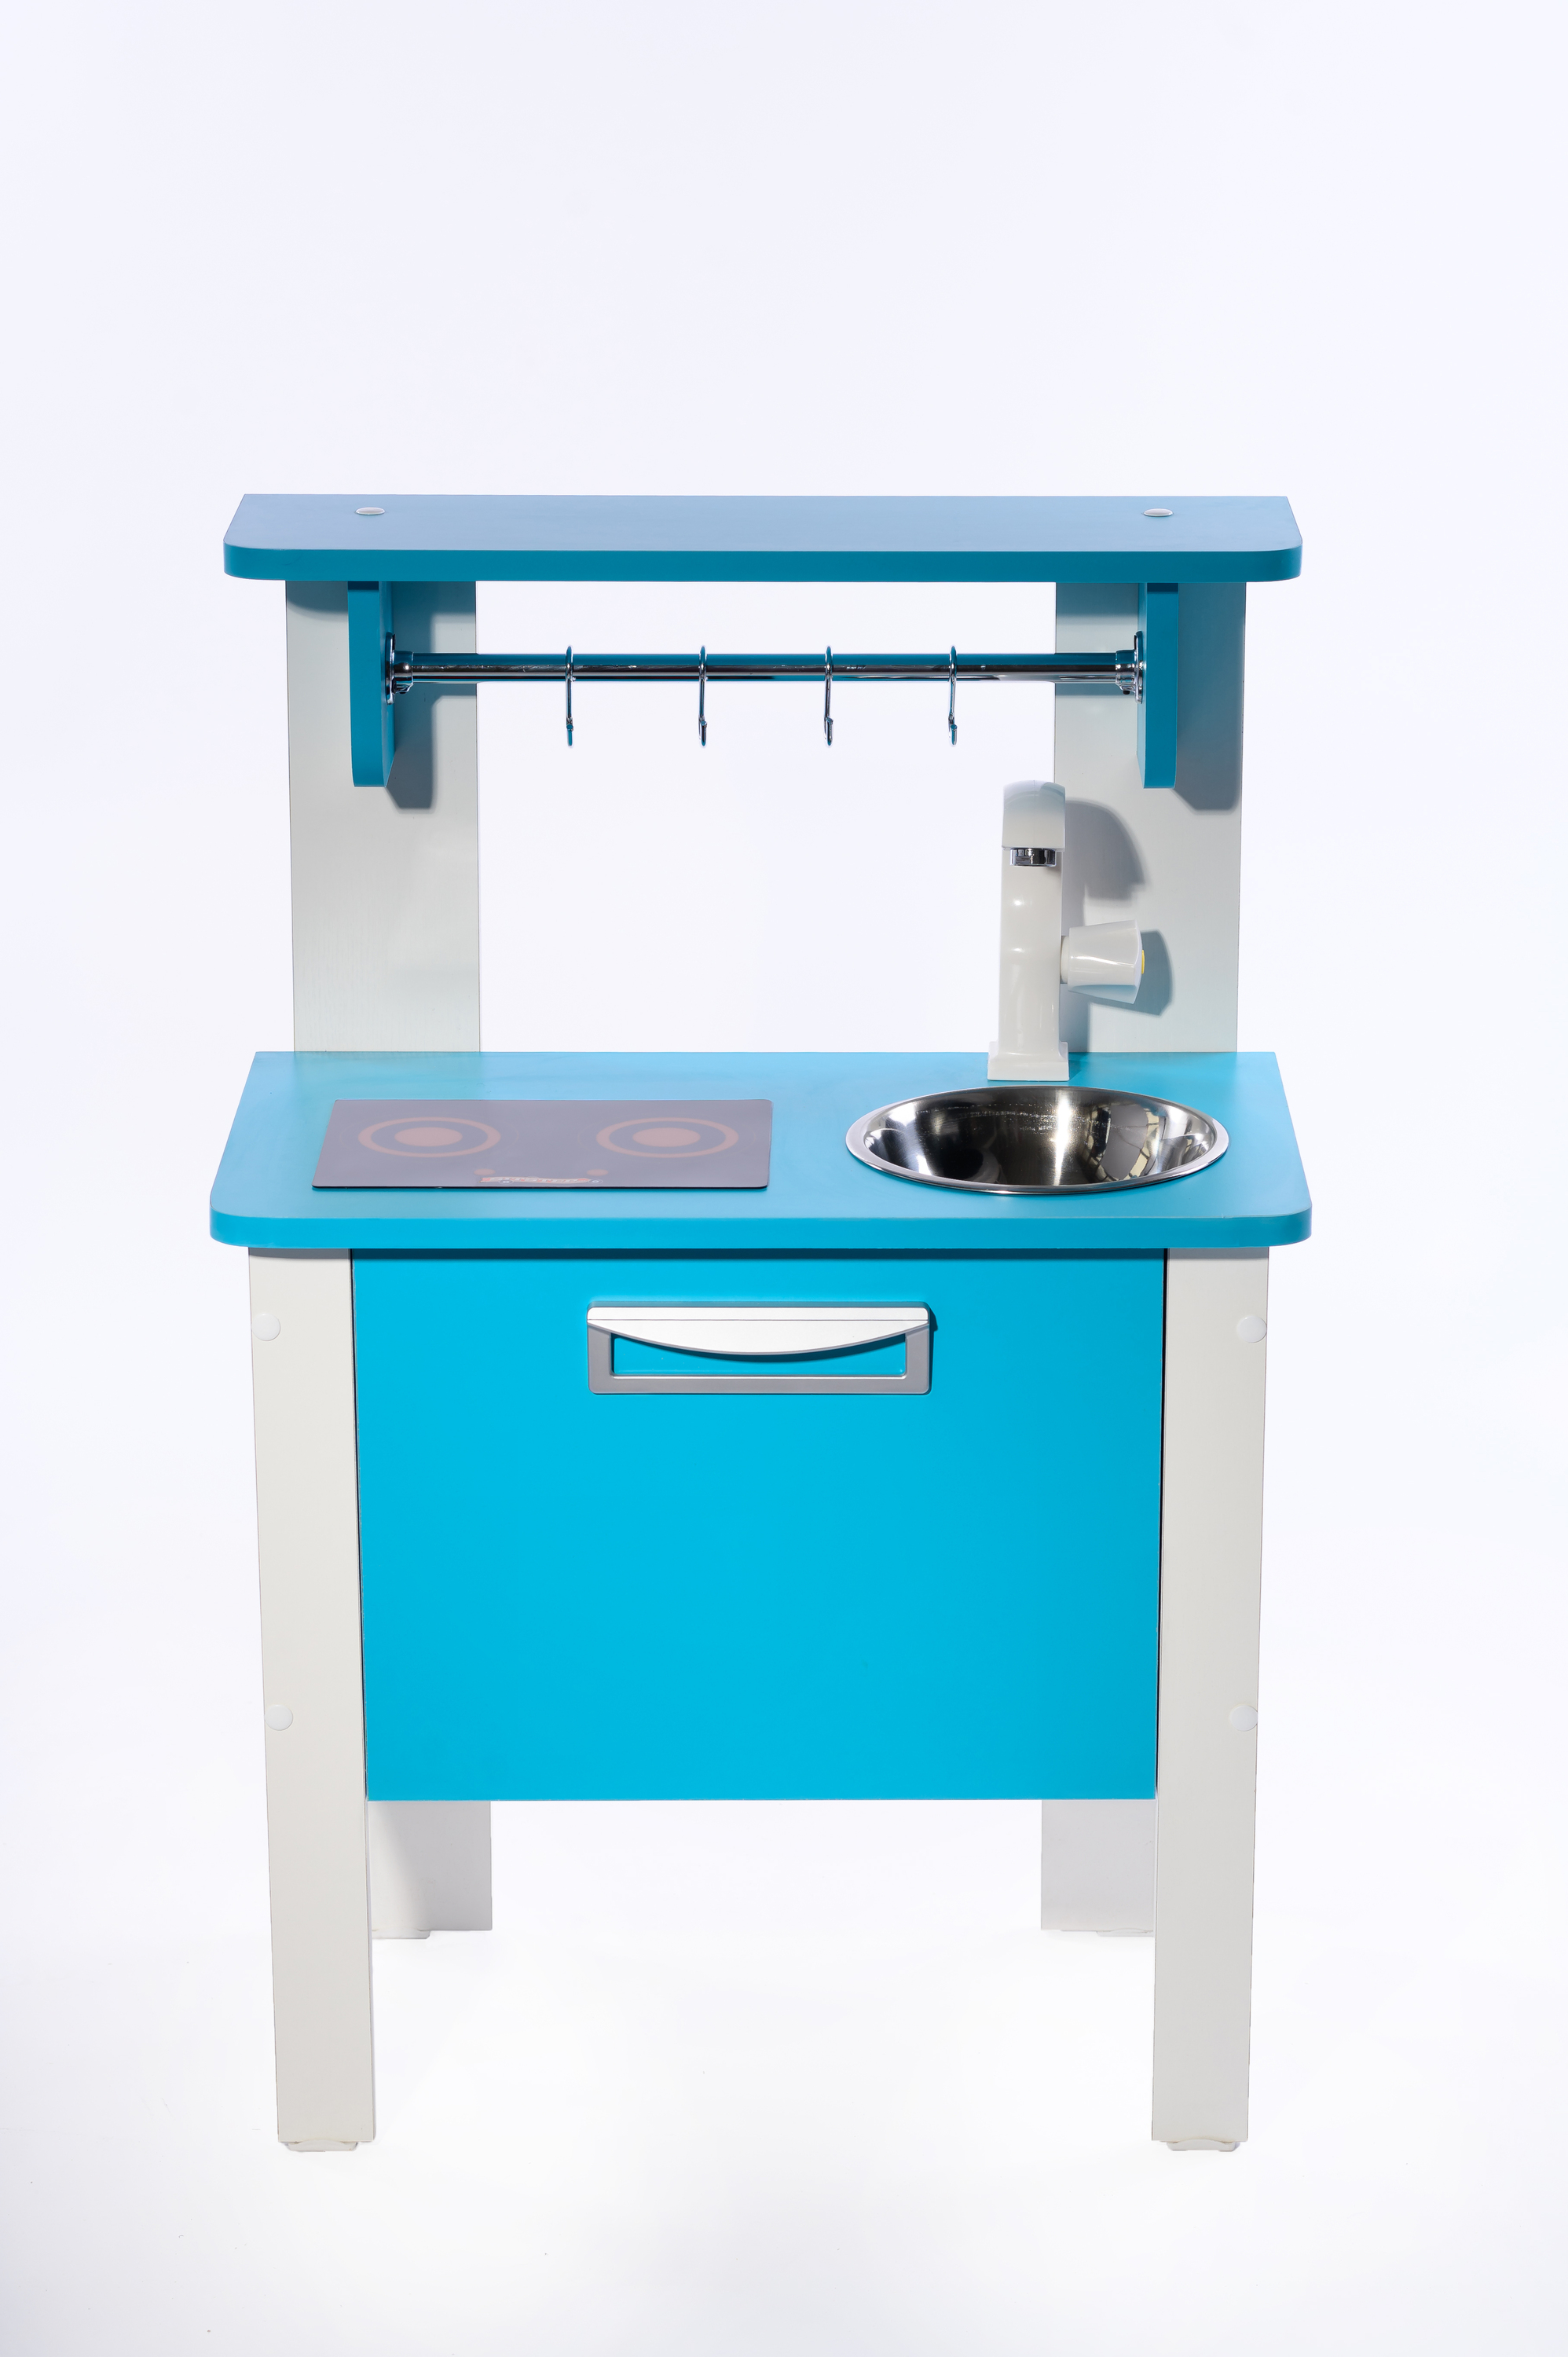 Детская кухня SITSTEP Элегантс с имитацией плиты (наклейкой), синие фасады